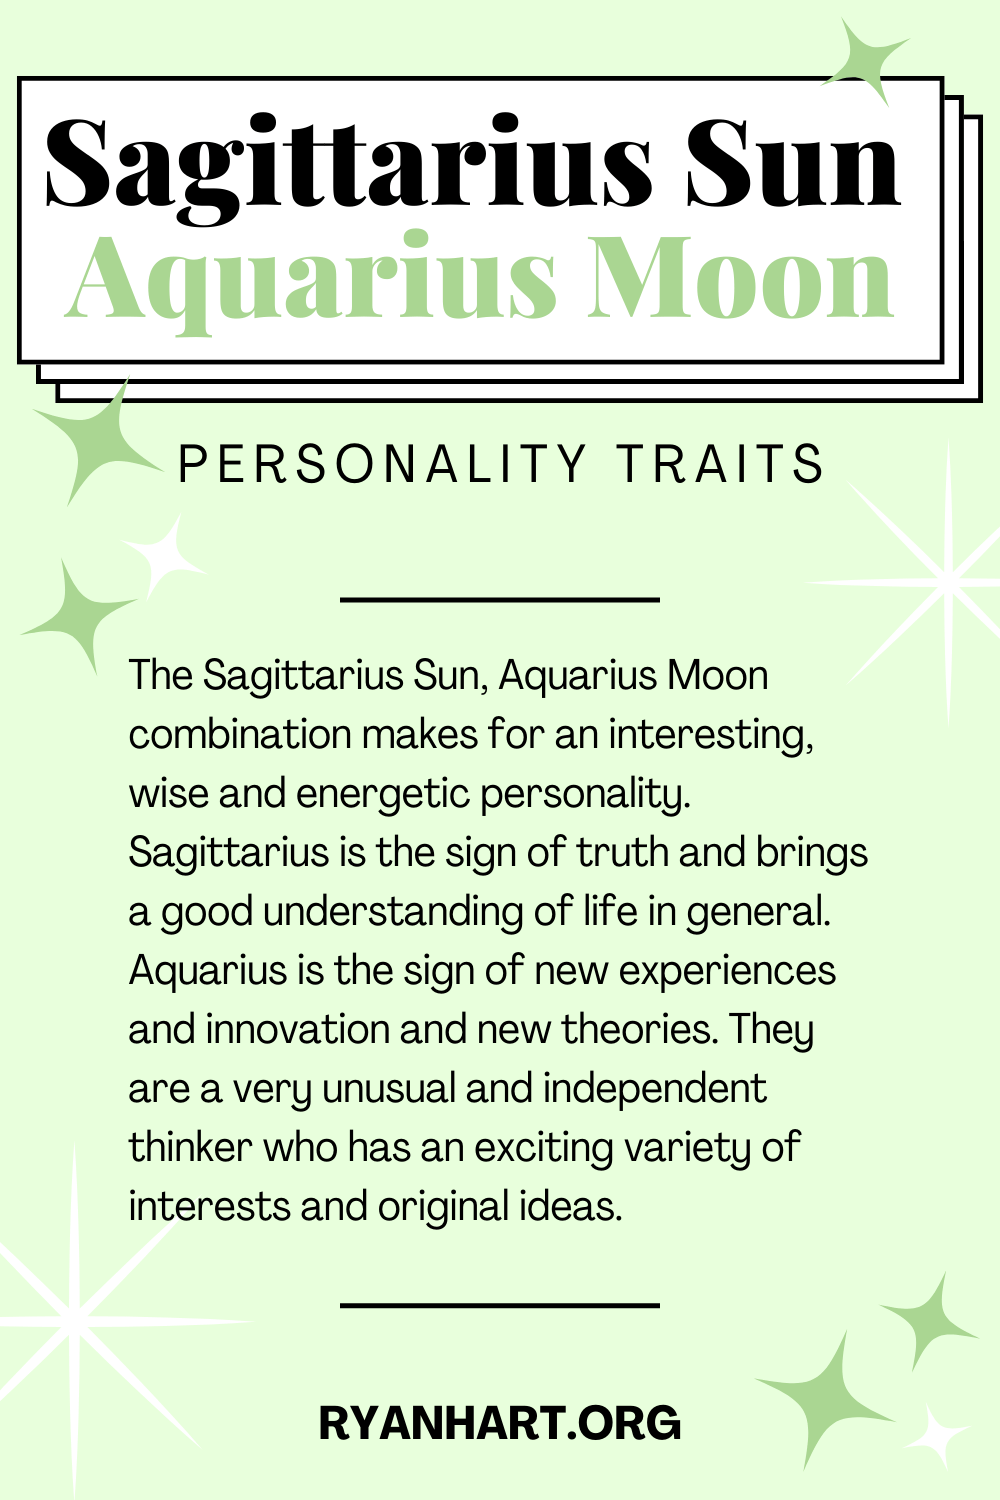 Sagittarius Sun Aquarius Moon Description